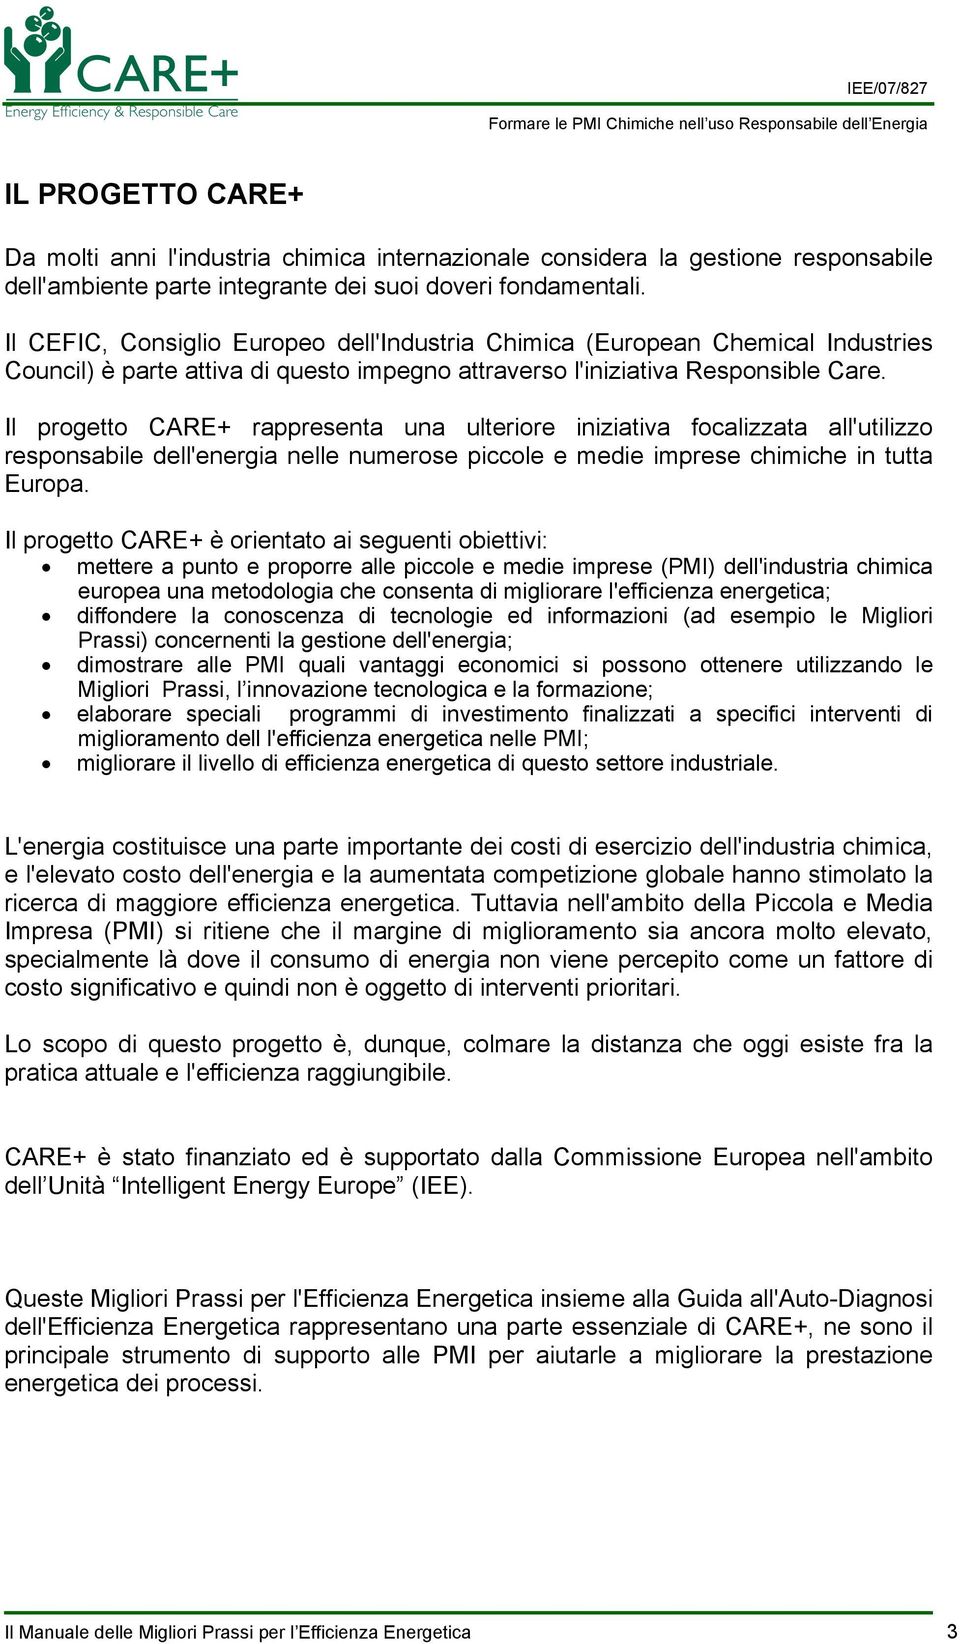 Il progetto CARE+ rappresenta una ulteriore iniziativa focalizzata all'utilizzo responsabile dell'energia nelle numerose piccole e medie imprese chimiche in tutta Europa.